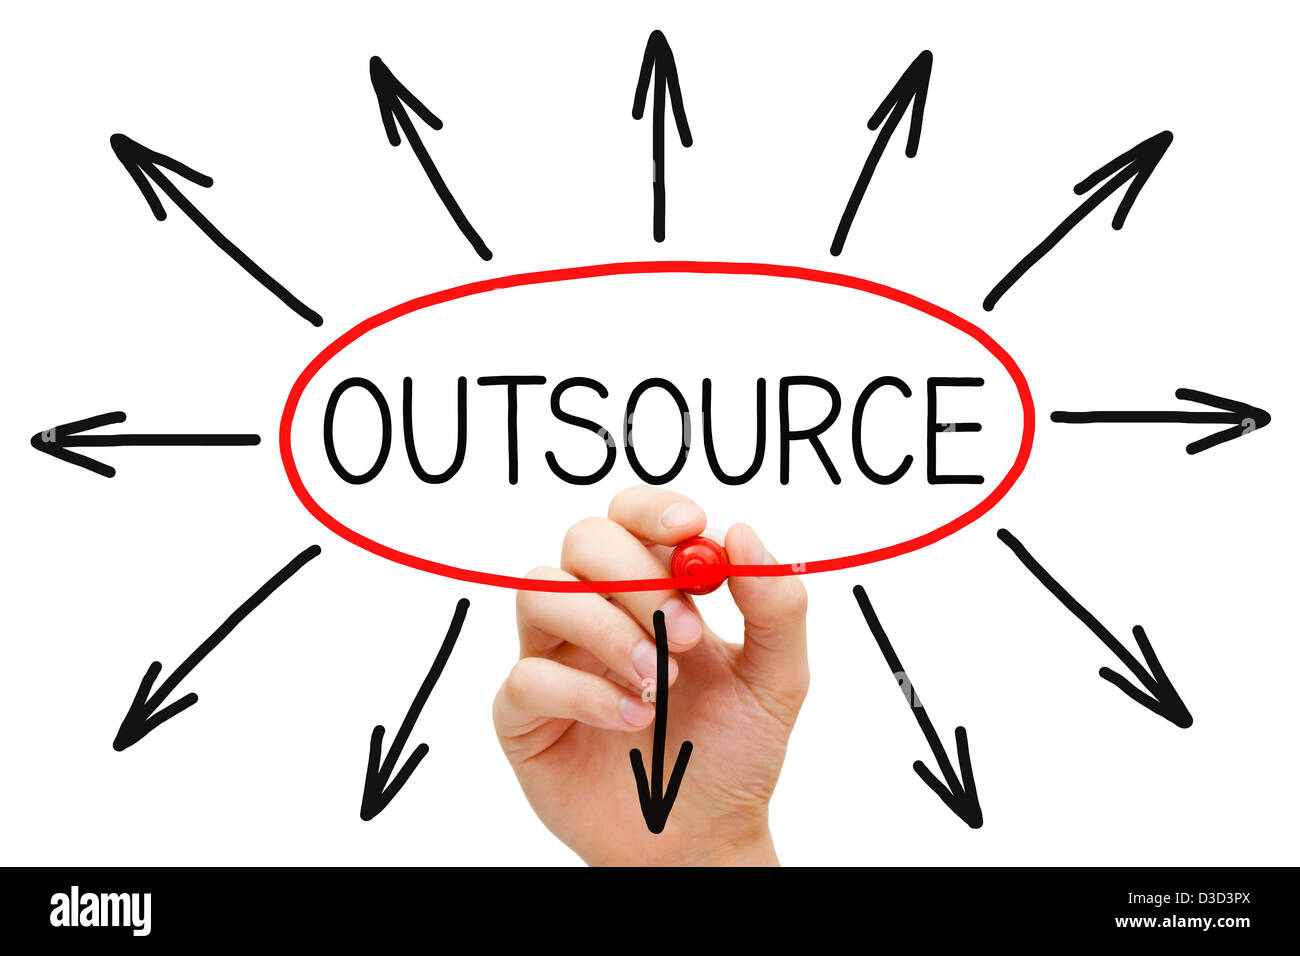 Handzeichnung Outsourcing-Konzept mit roten Markierung auf transparente wischen. Stockfoto